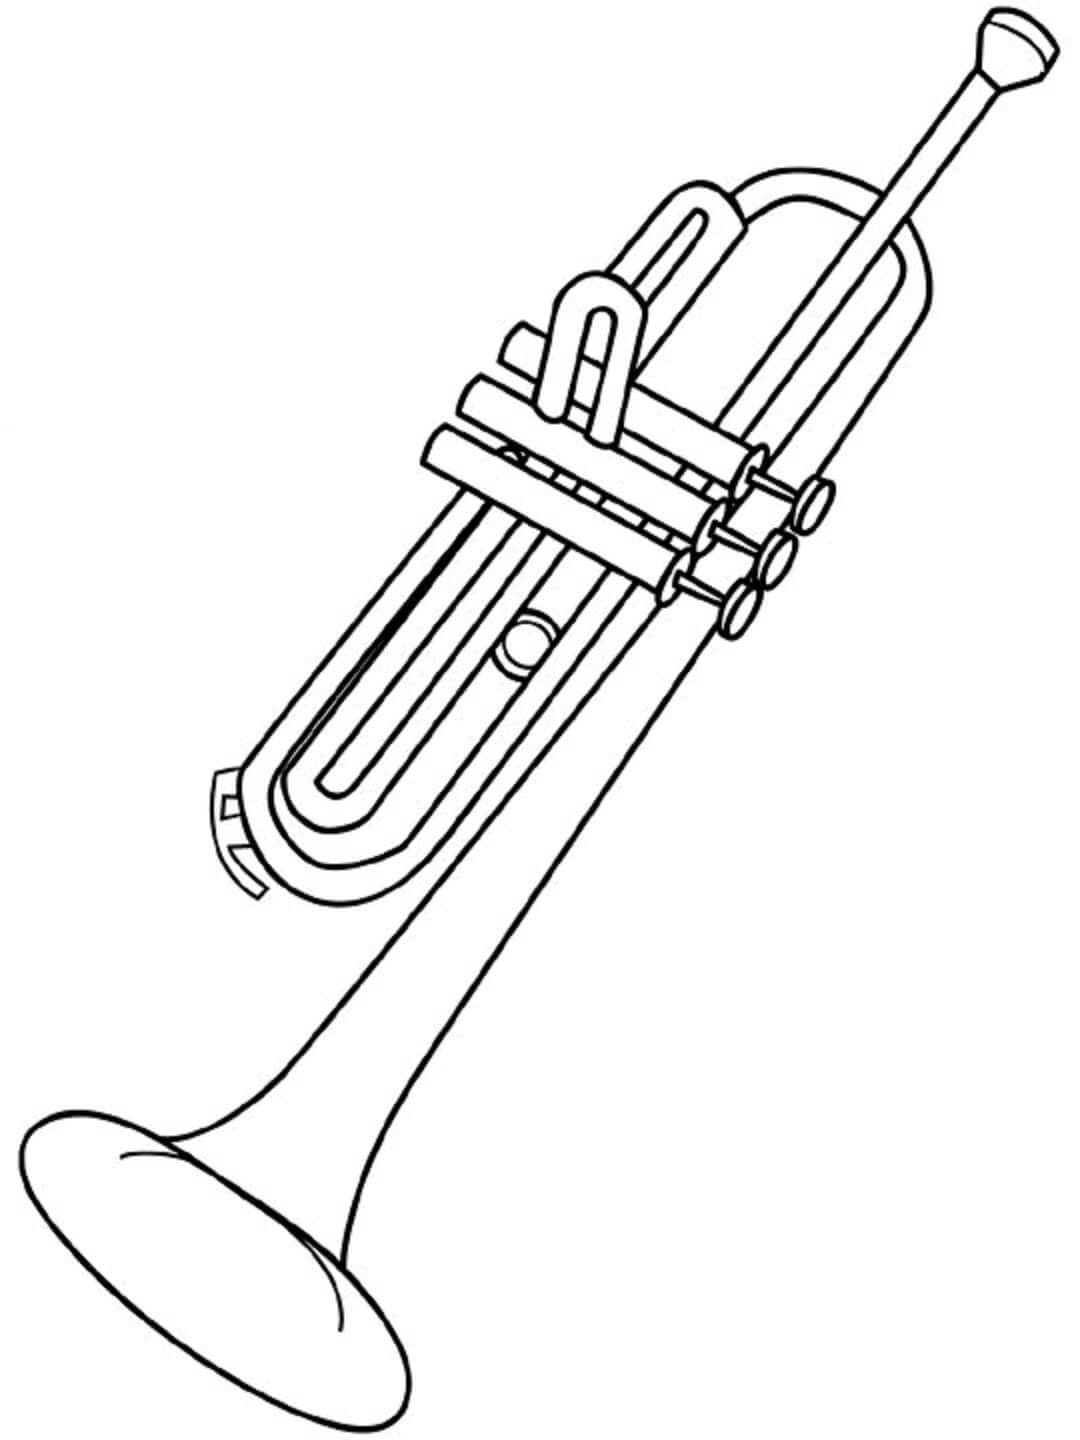 Trumpetti coloring page